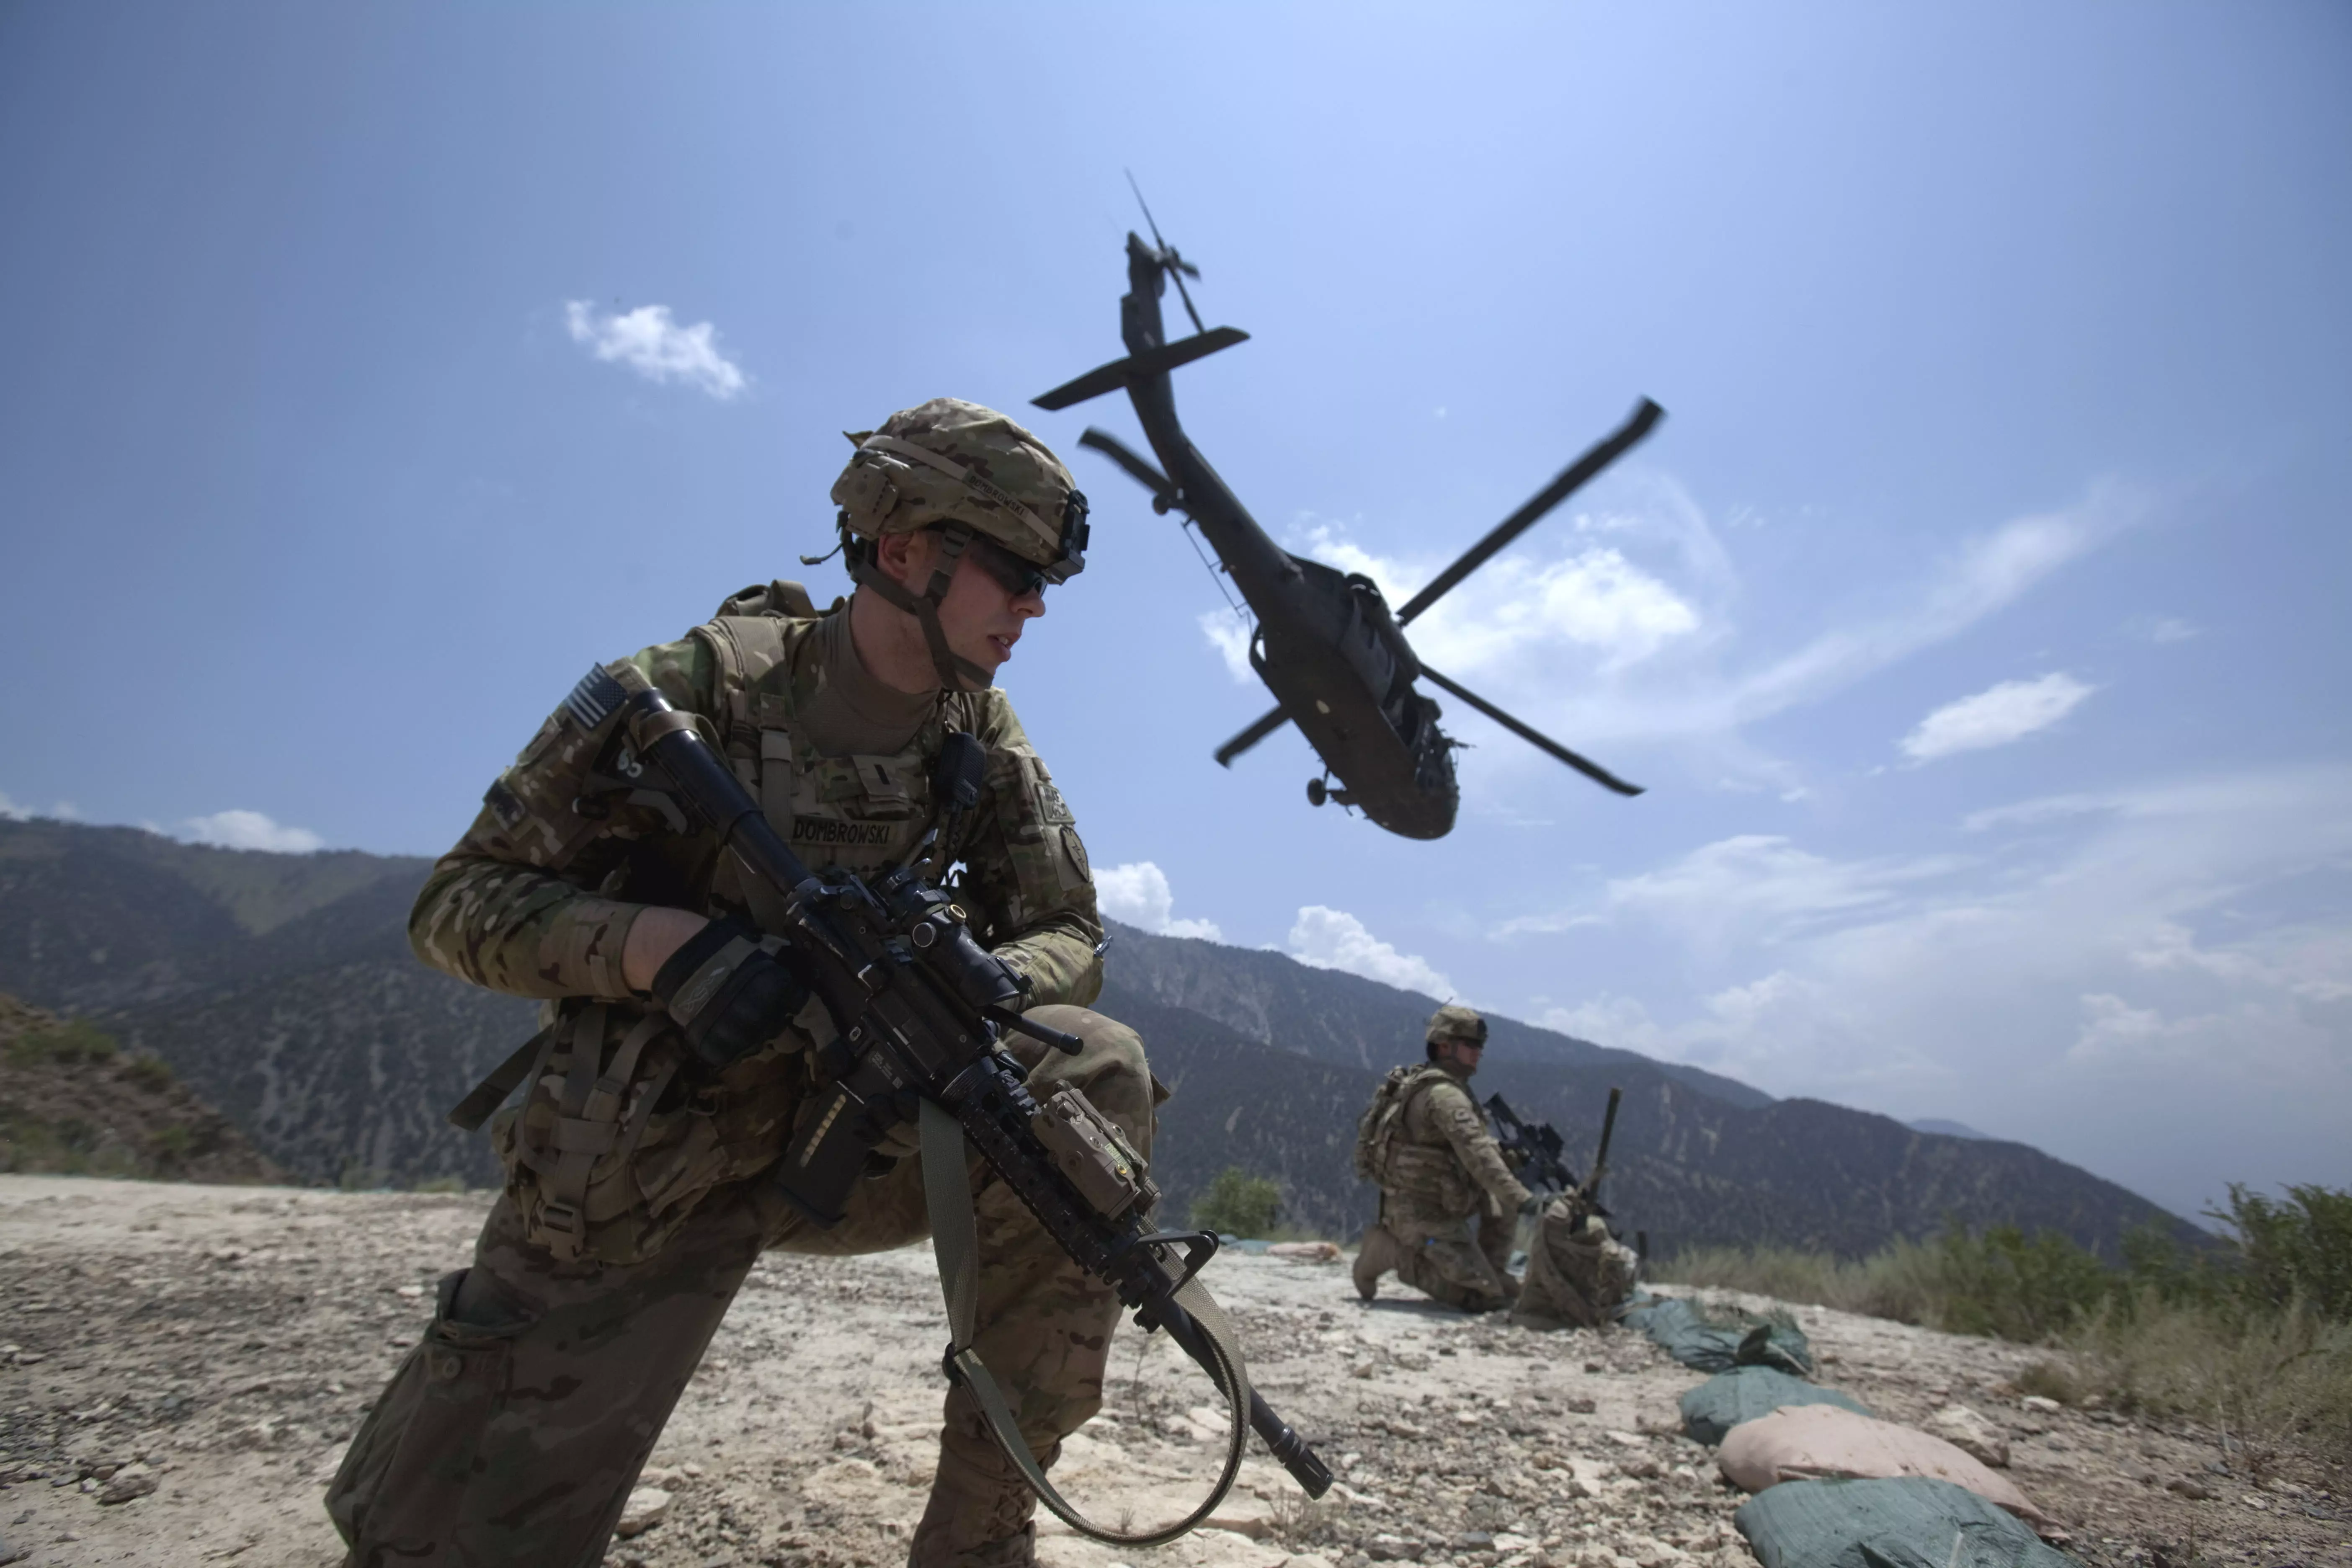 ברגדאל לא היה חייל לאומי. לוחמי צבא ארה"ב באפגניסטן